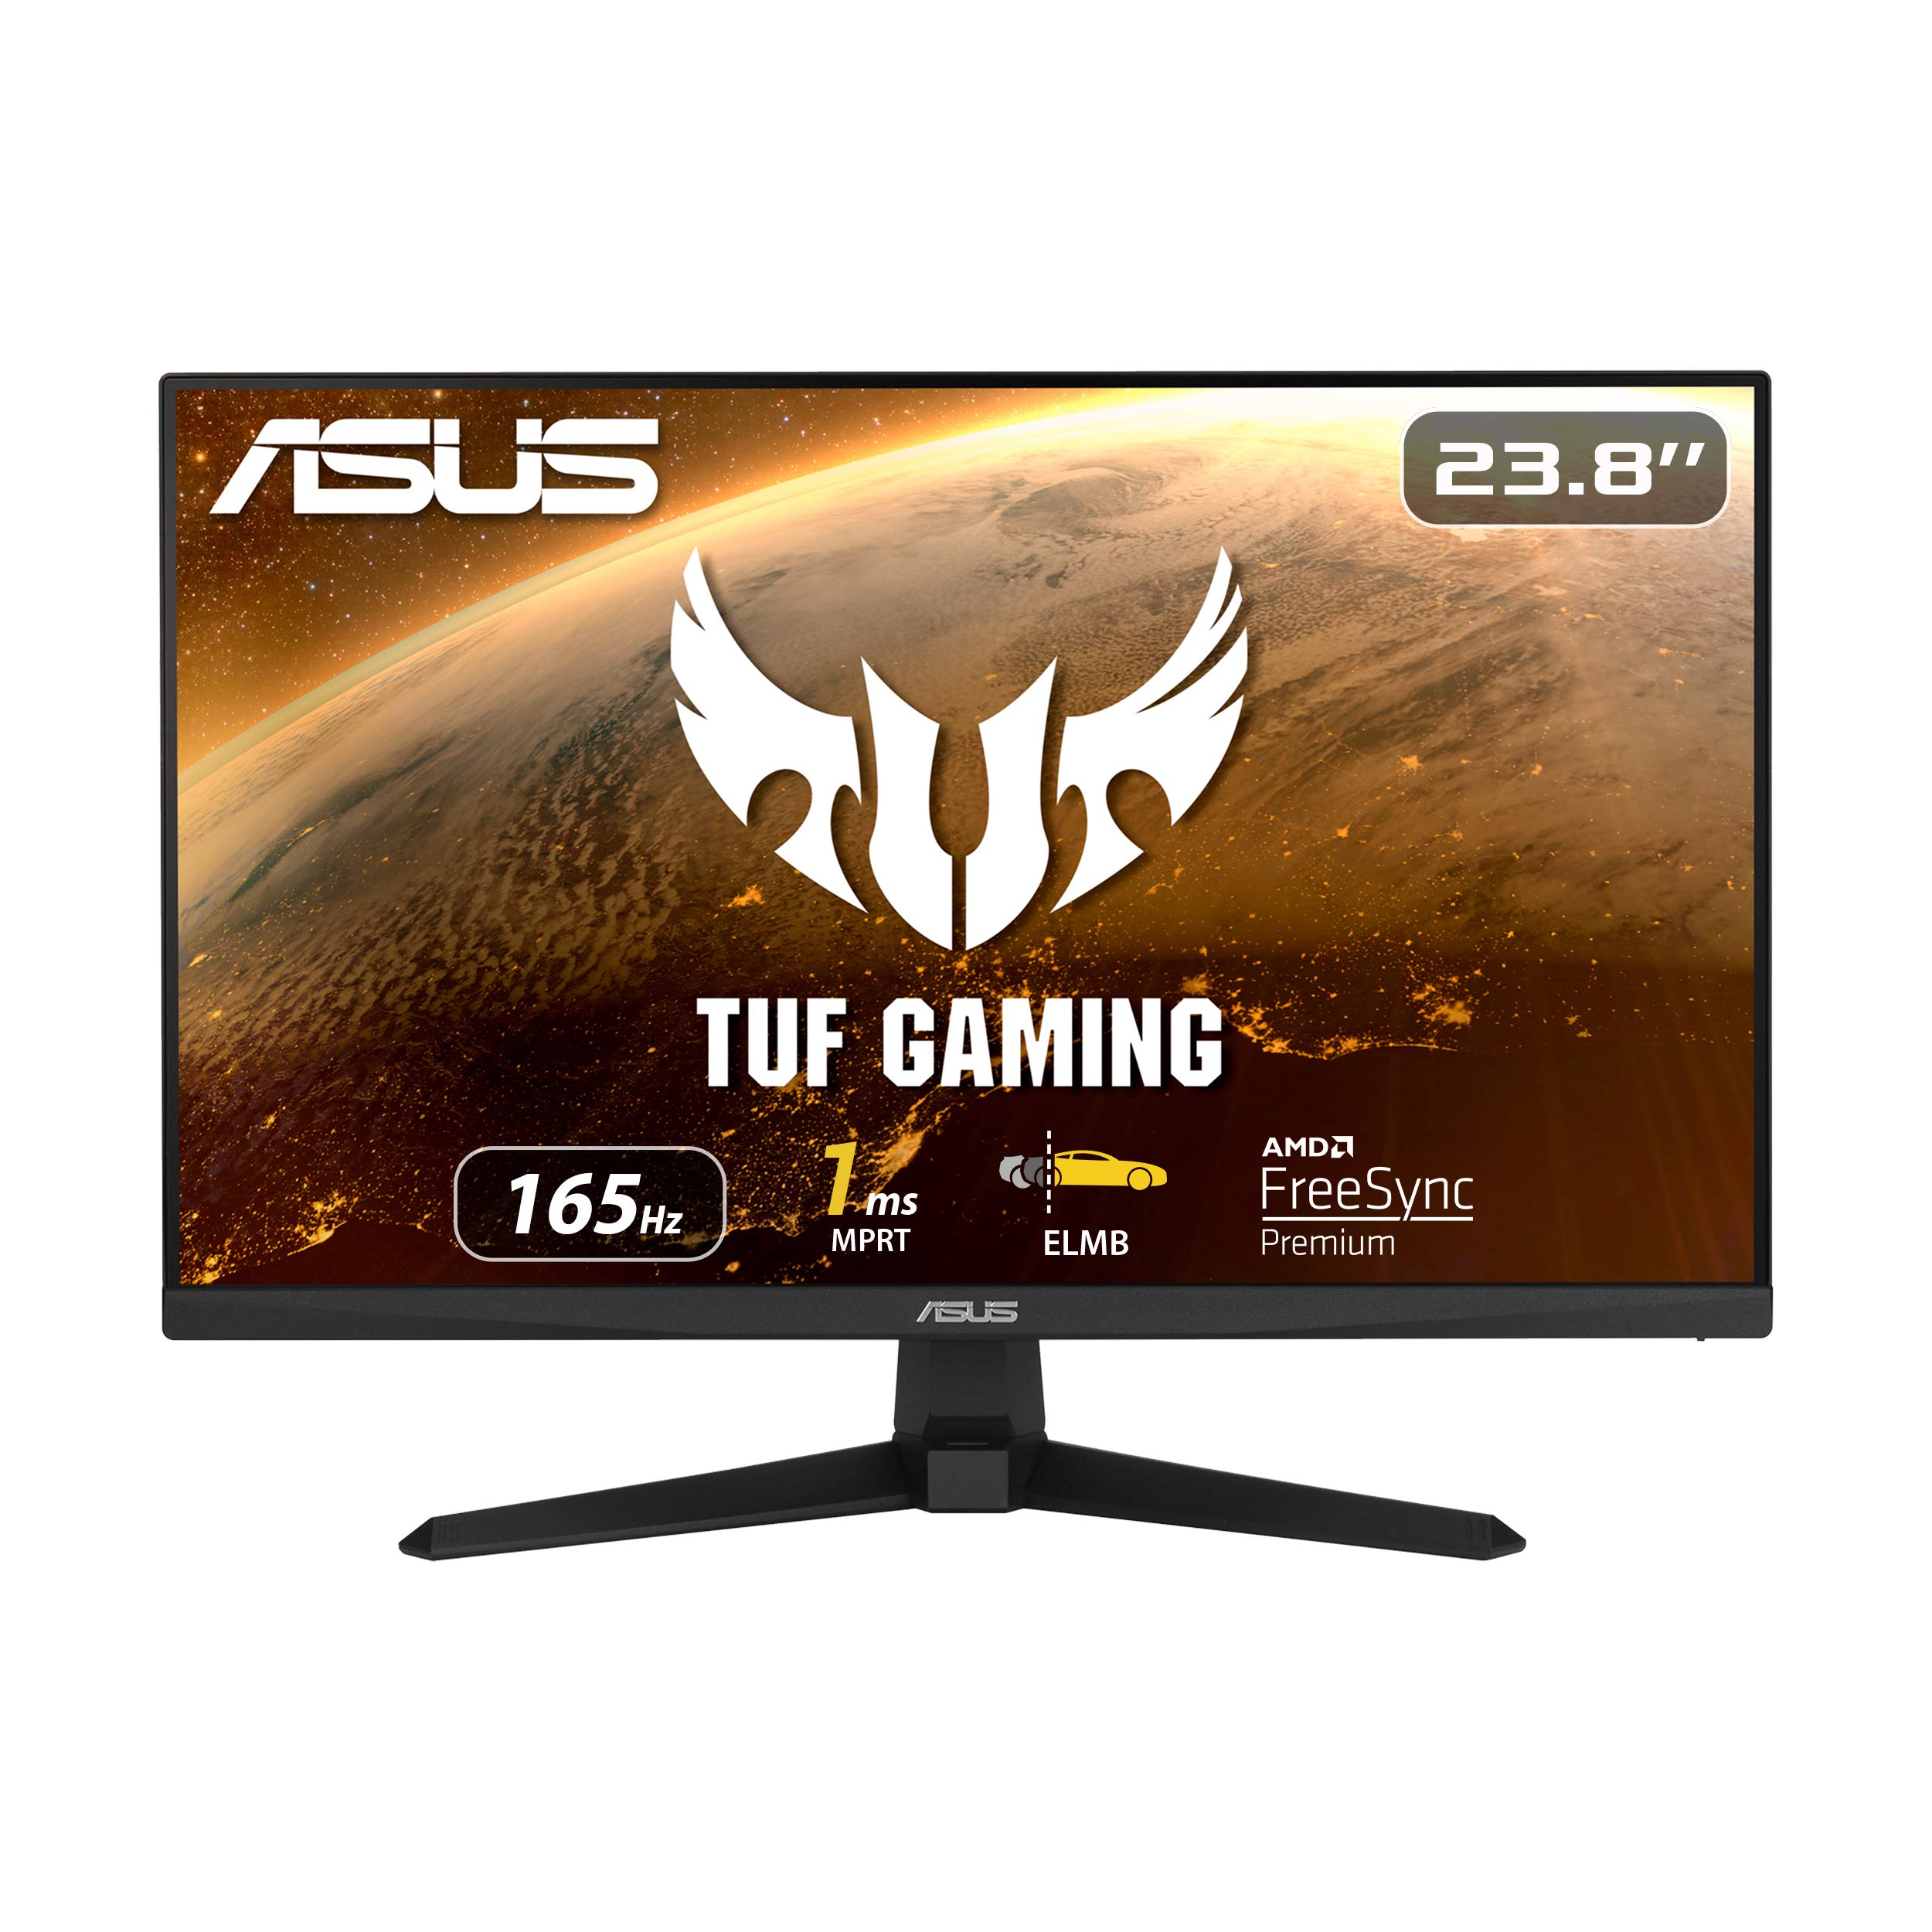  Asus TUF ゲーミング 23.8 1080P モニター (VG249Q1A) - フル HD、IPS、165Hz (144Hz をサポート)、1ms、超低モーションブラー、スピーカー、FreeSync プレミアム、シ...